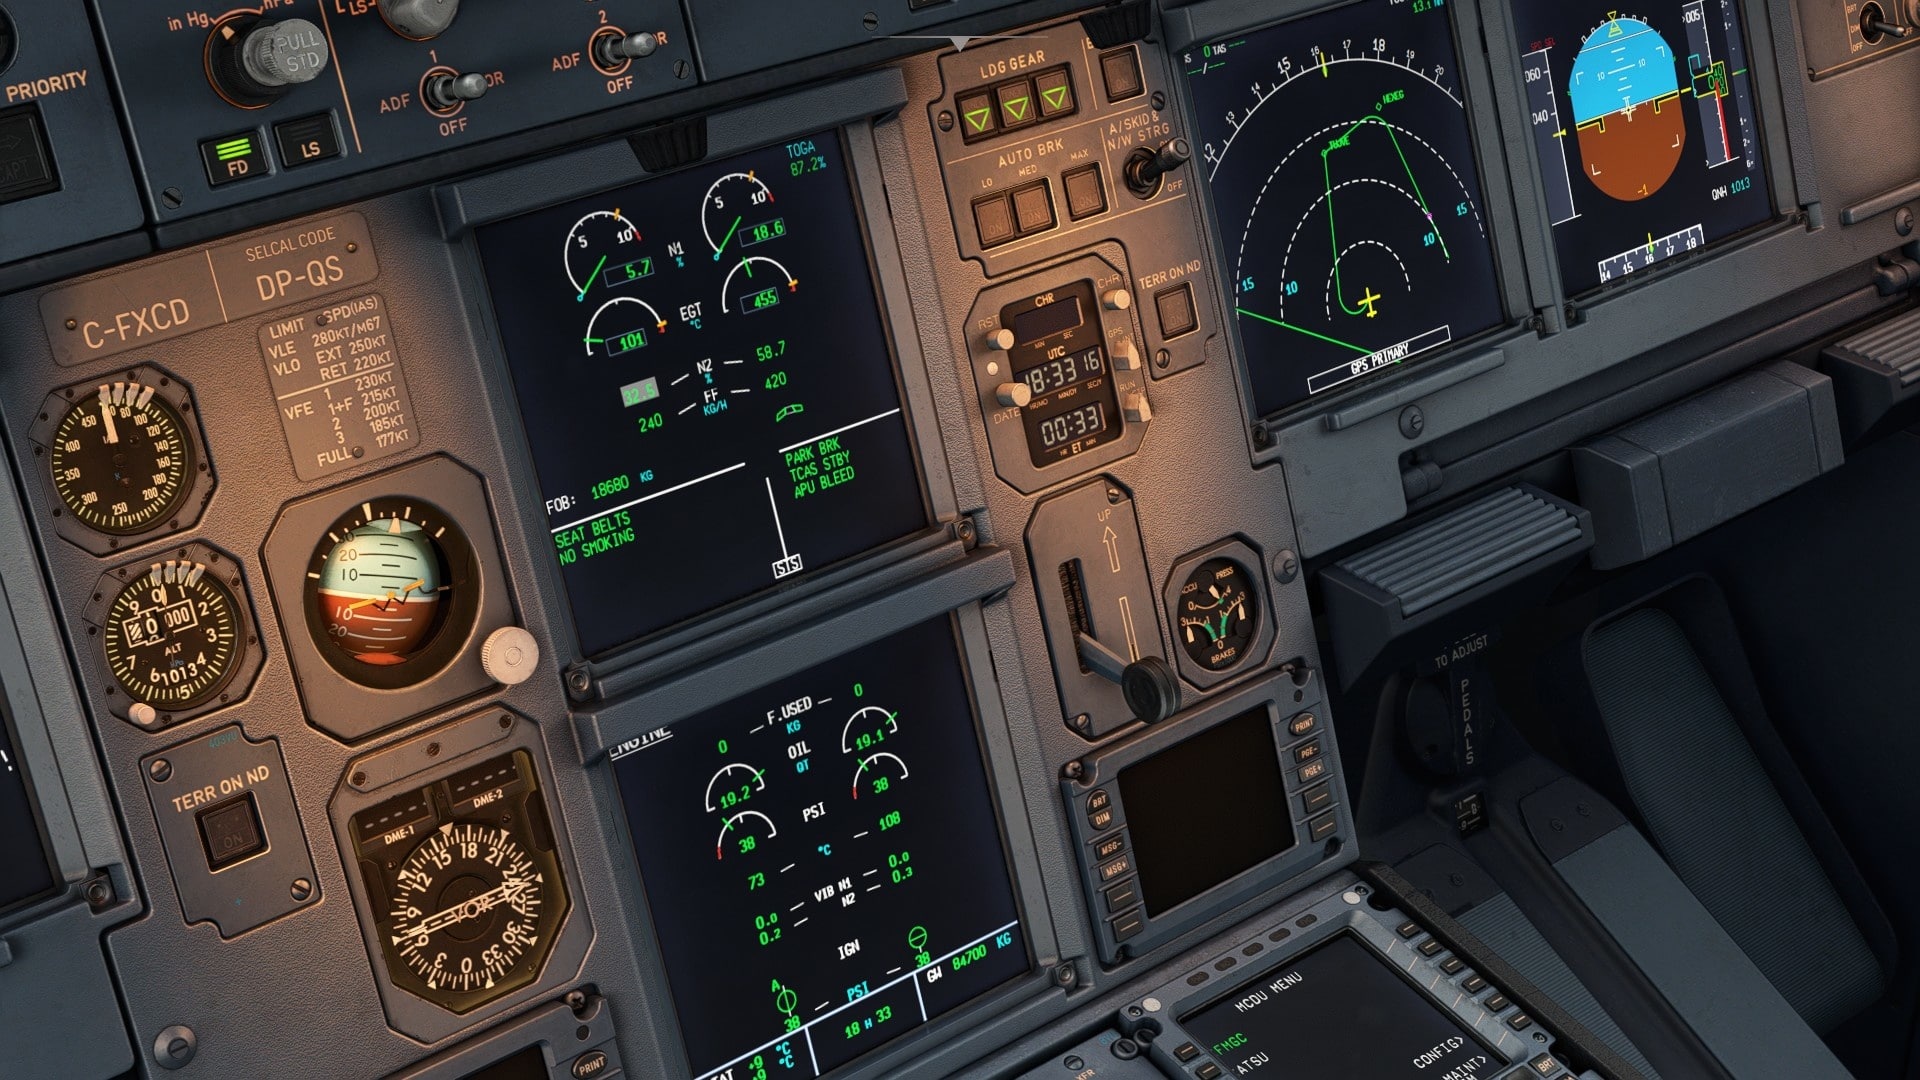 (Le cockpit a l'air graphiquement très réaliste et presque palpable. Les écrans peuvent être rendus en option par la puce graphique interne de votre processeur (Intel), ce qui soulage la carte graphique proprement dite)